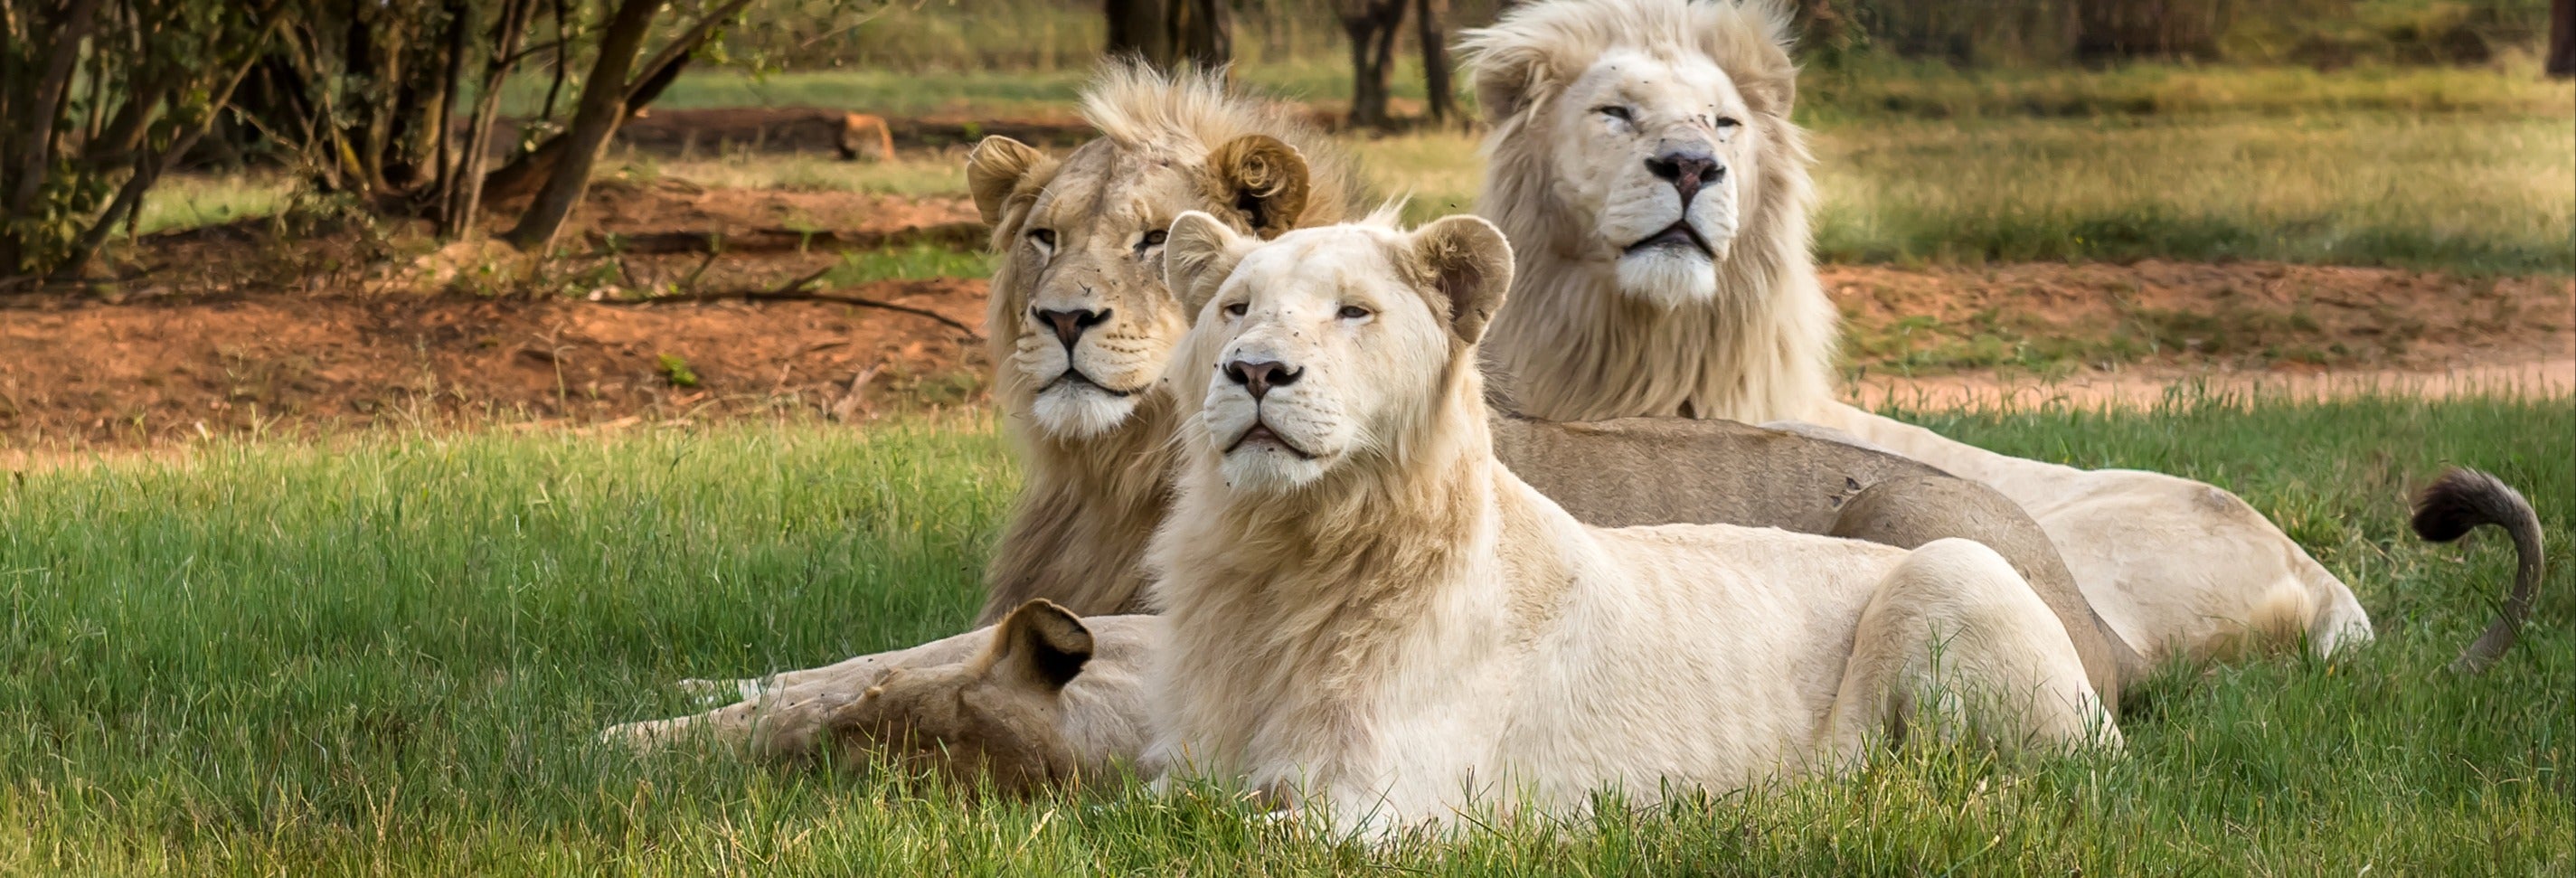 Excursão ao Lion Safari Park